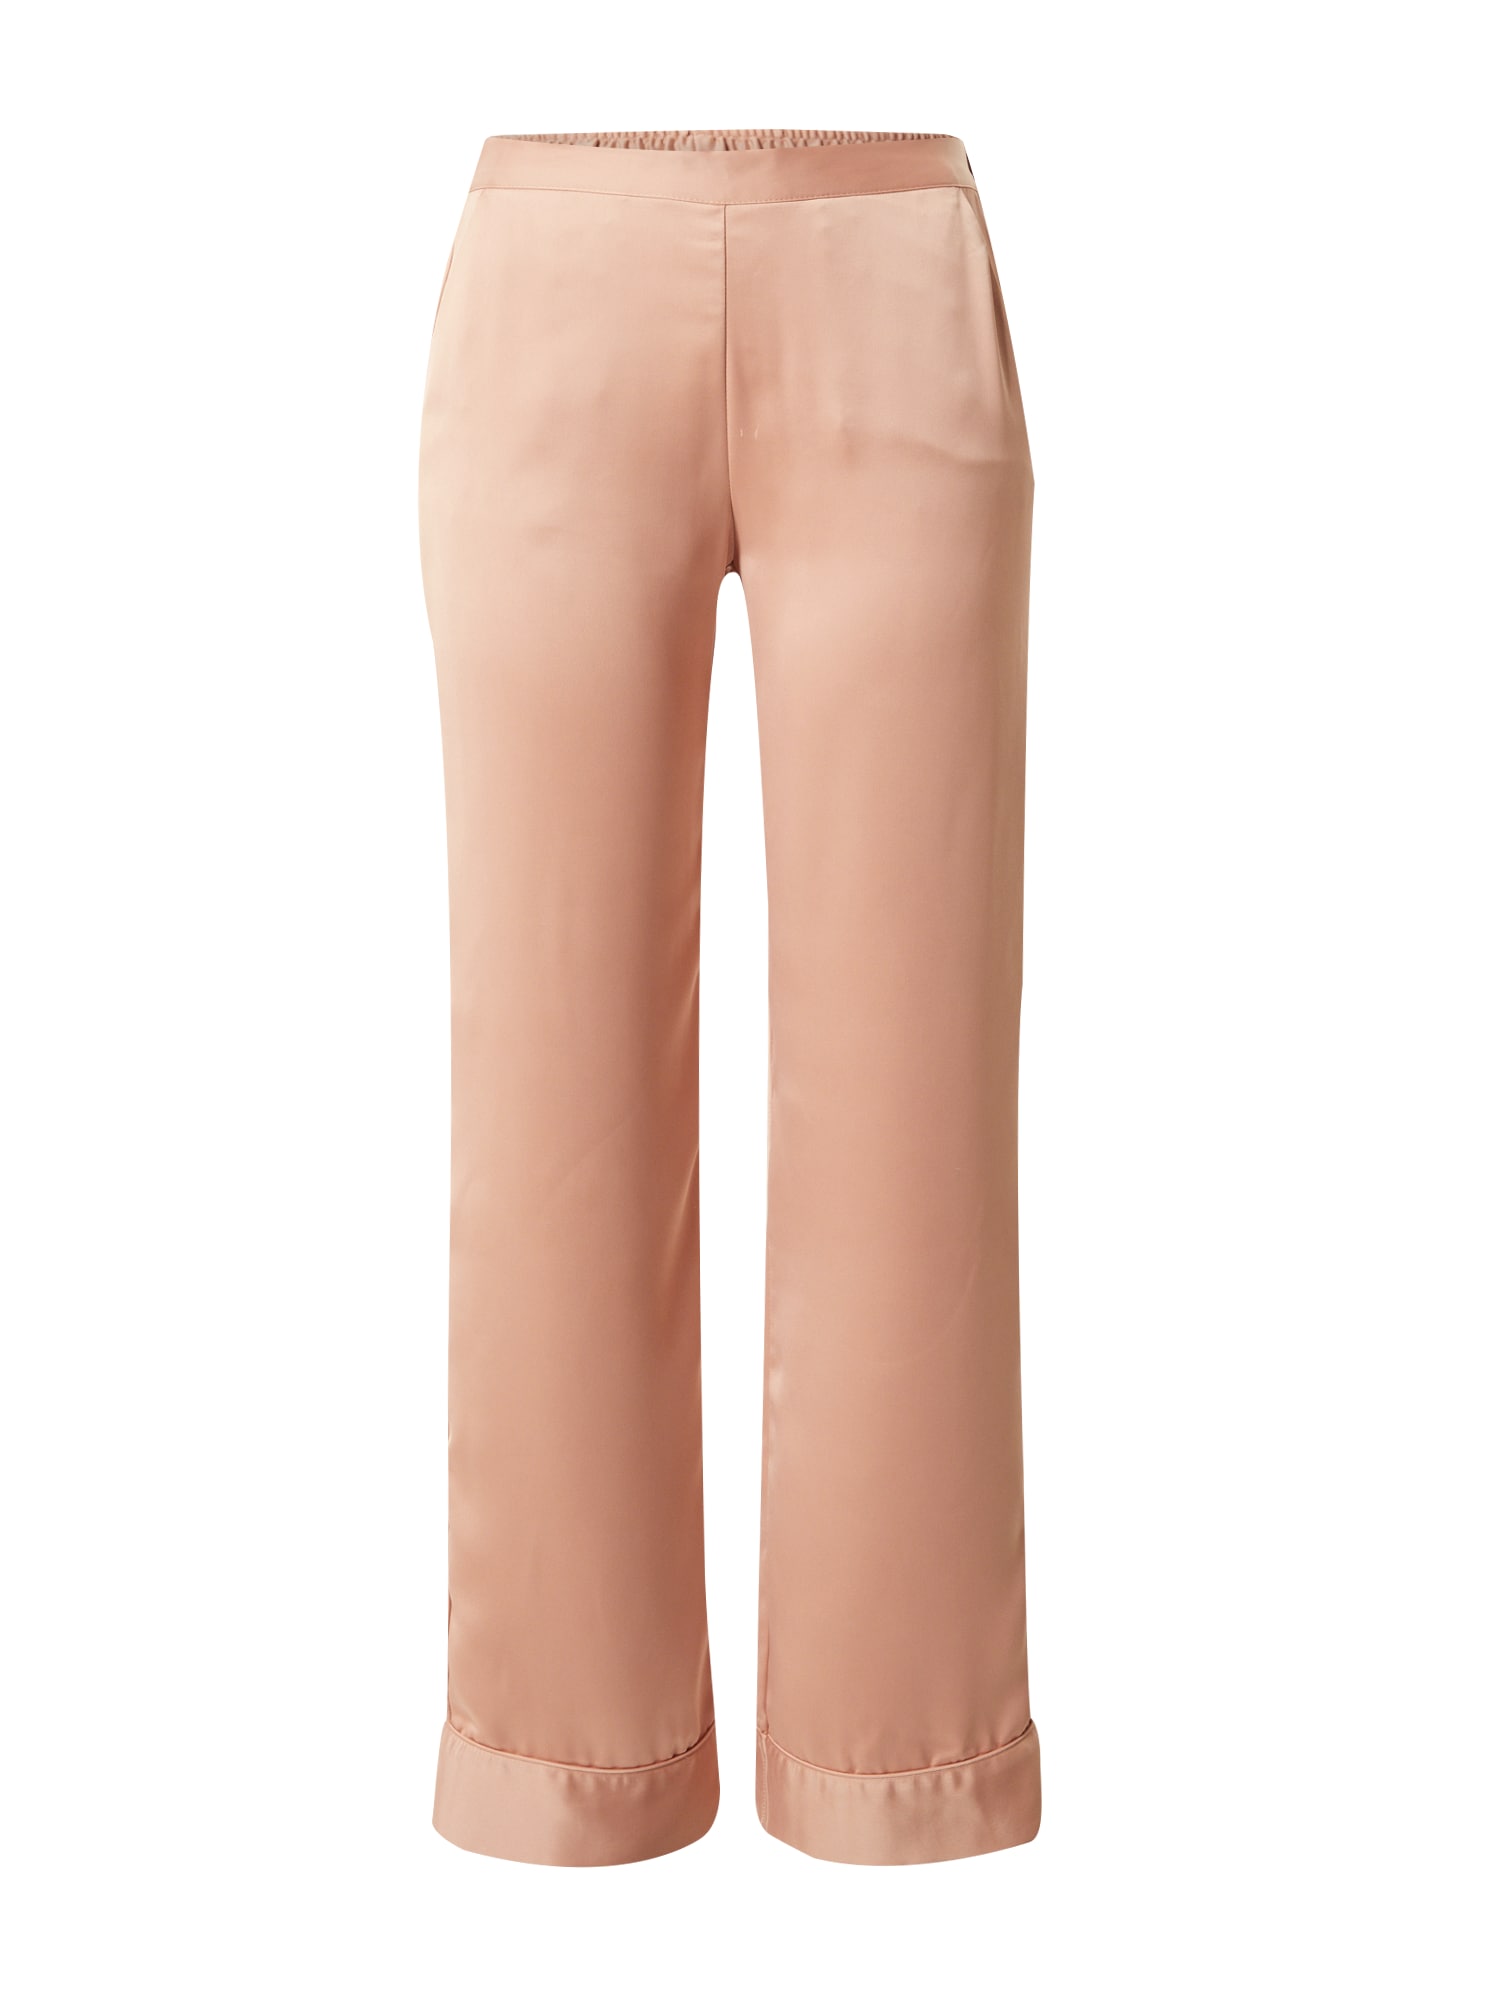 ETAM Панталон пижама  цвят 